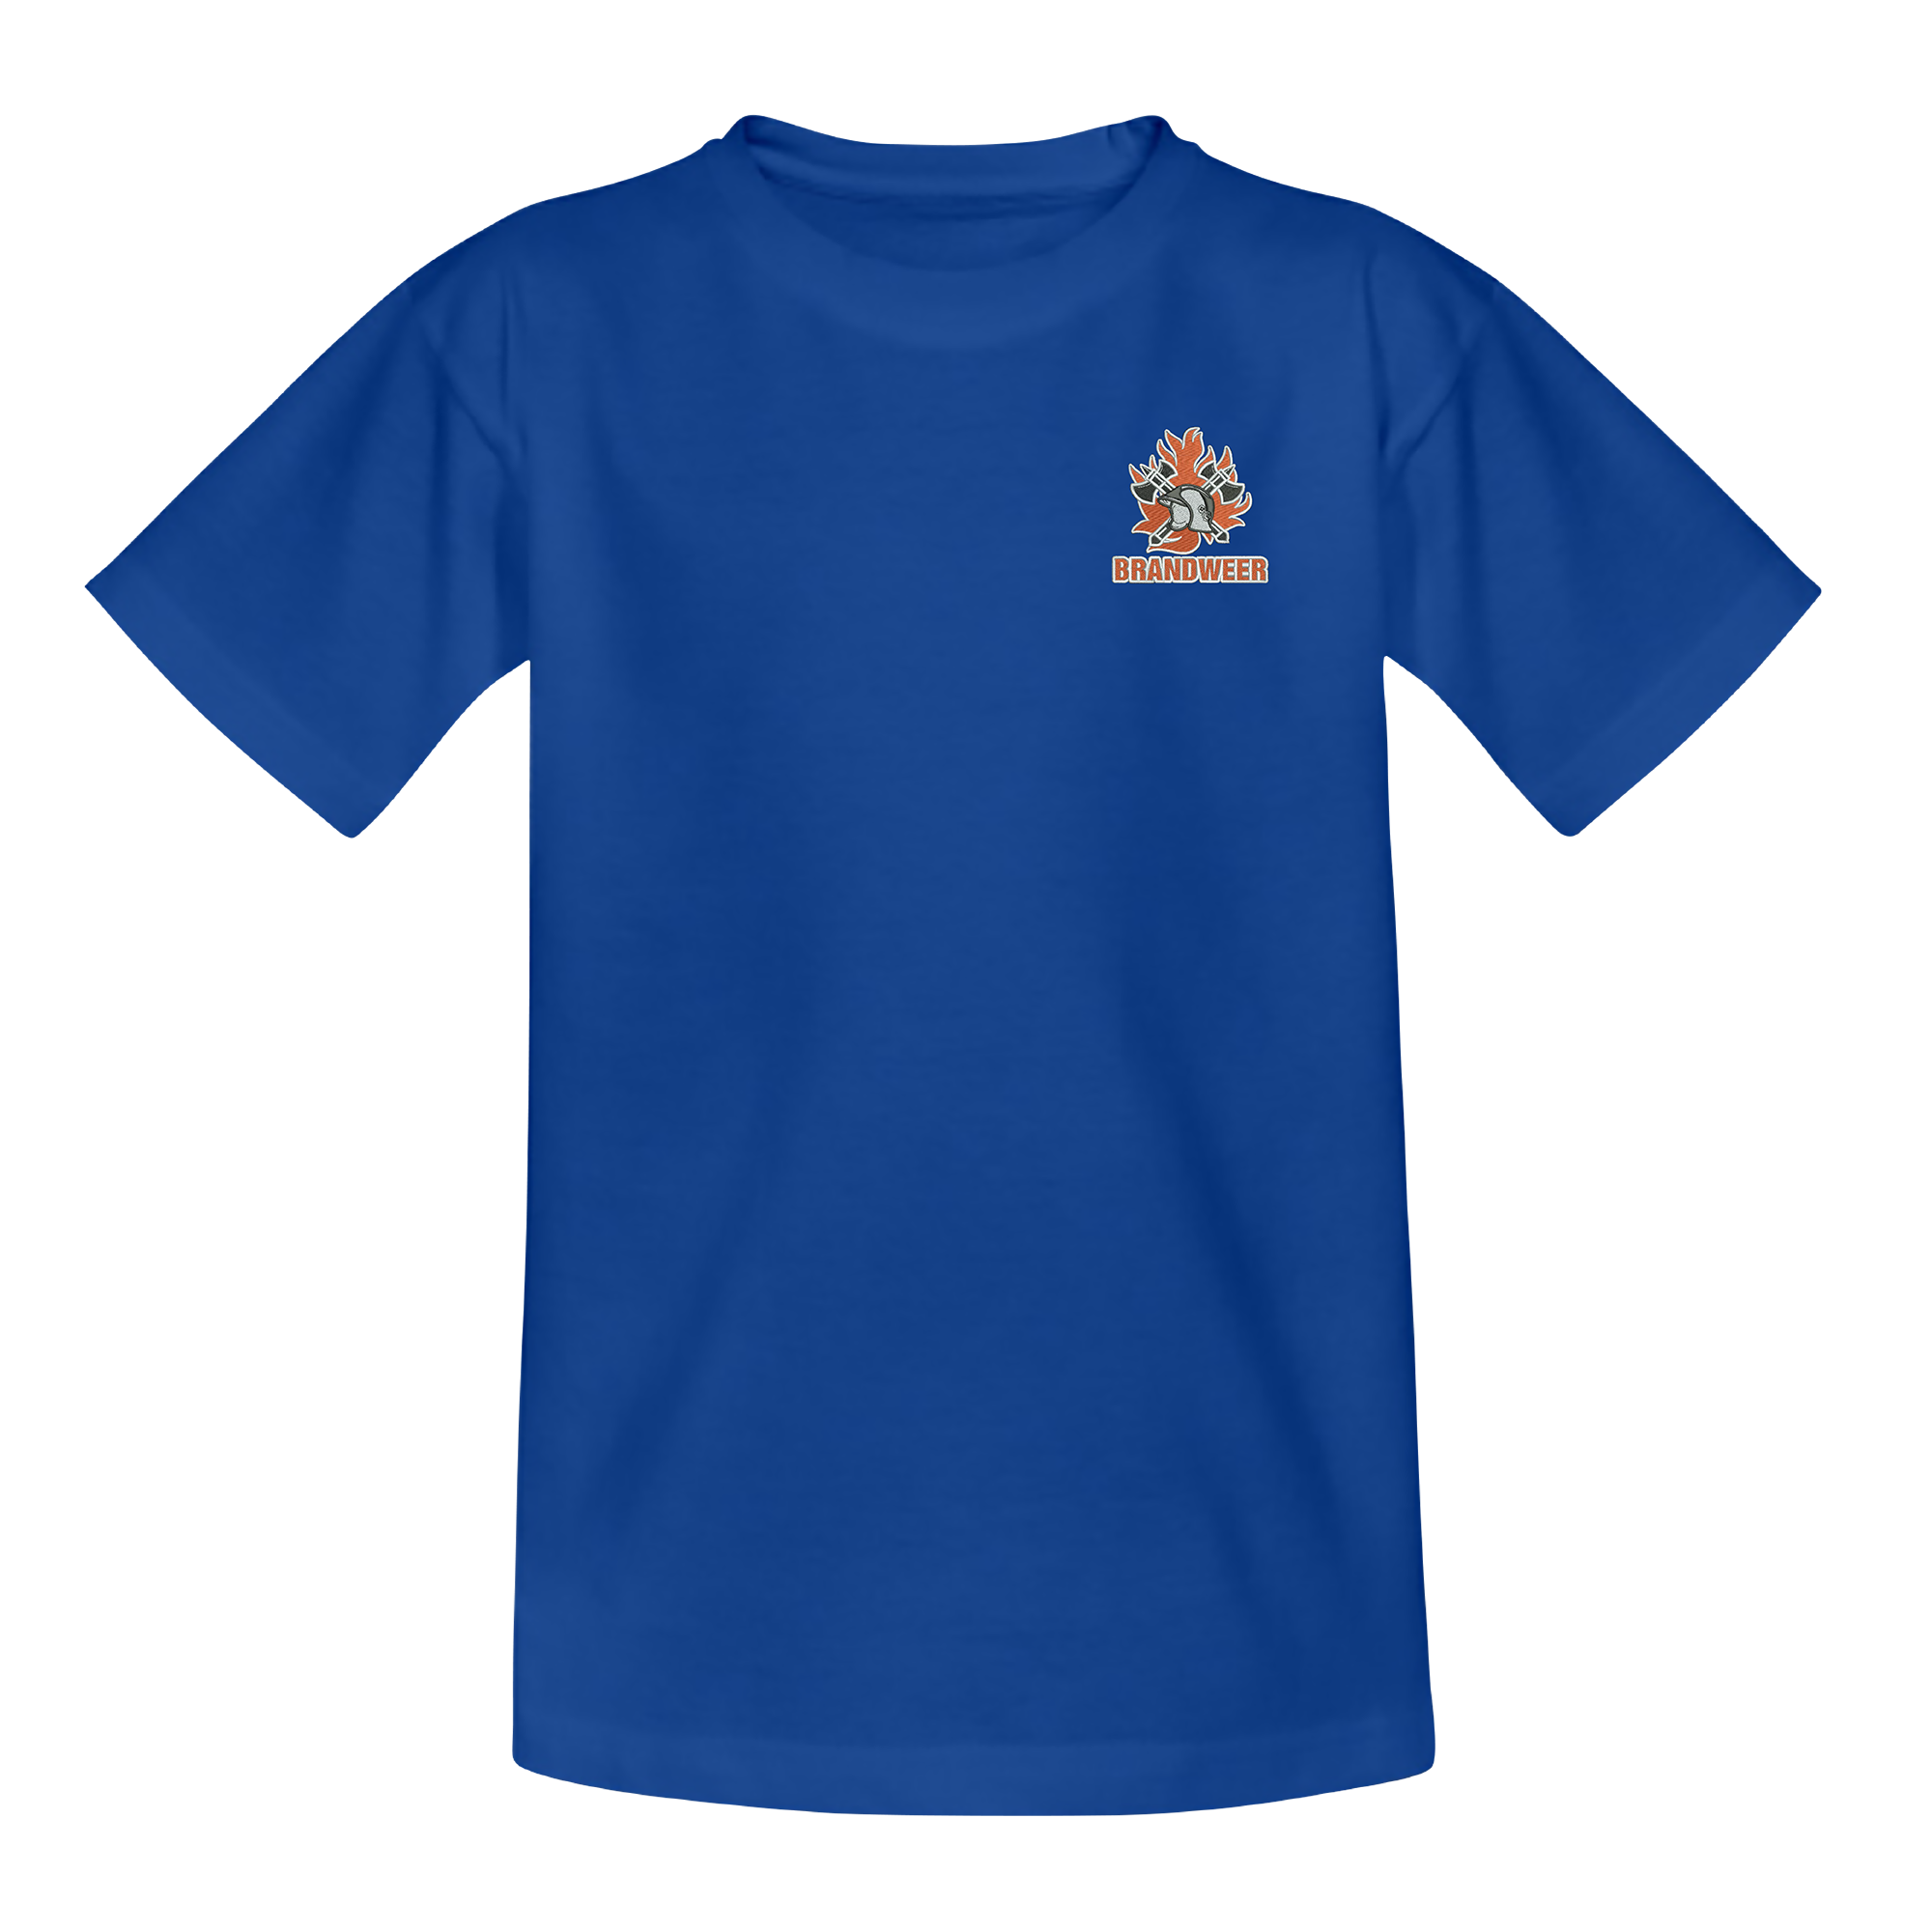 aangrenzend roddel Poort Kids logo brw borst + brandweer op rug T-Shirt - FireShop.be